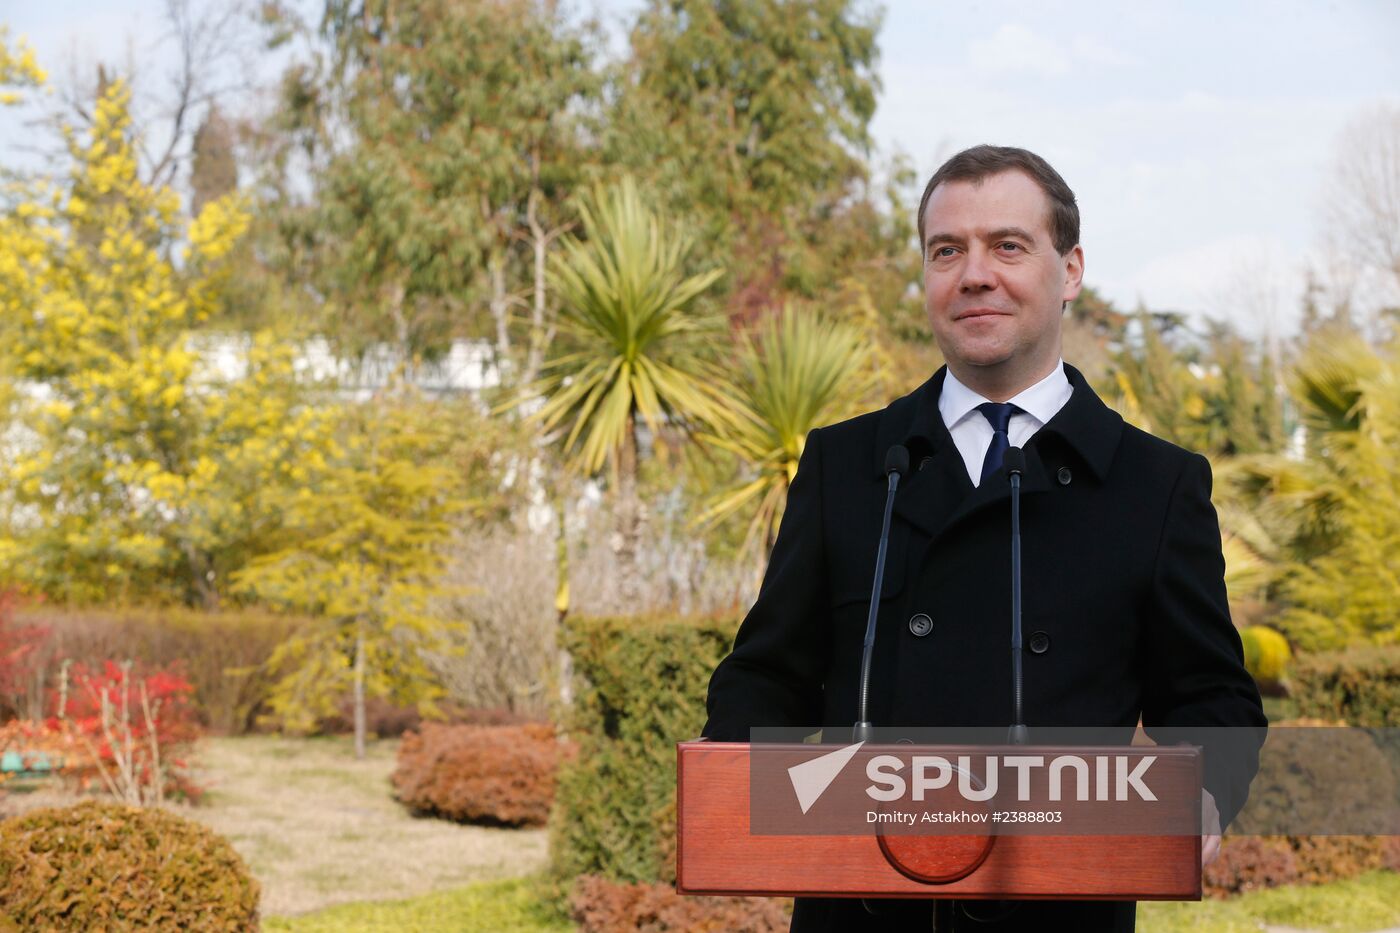 Dmitry Medvedev meets with Tigran Sargsyan